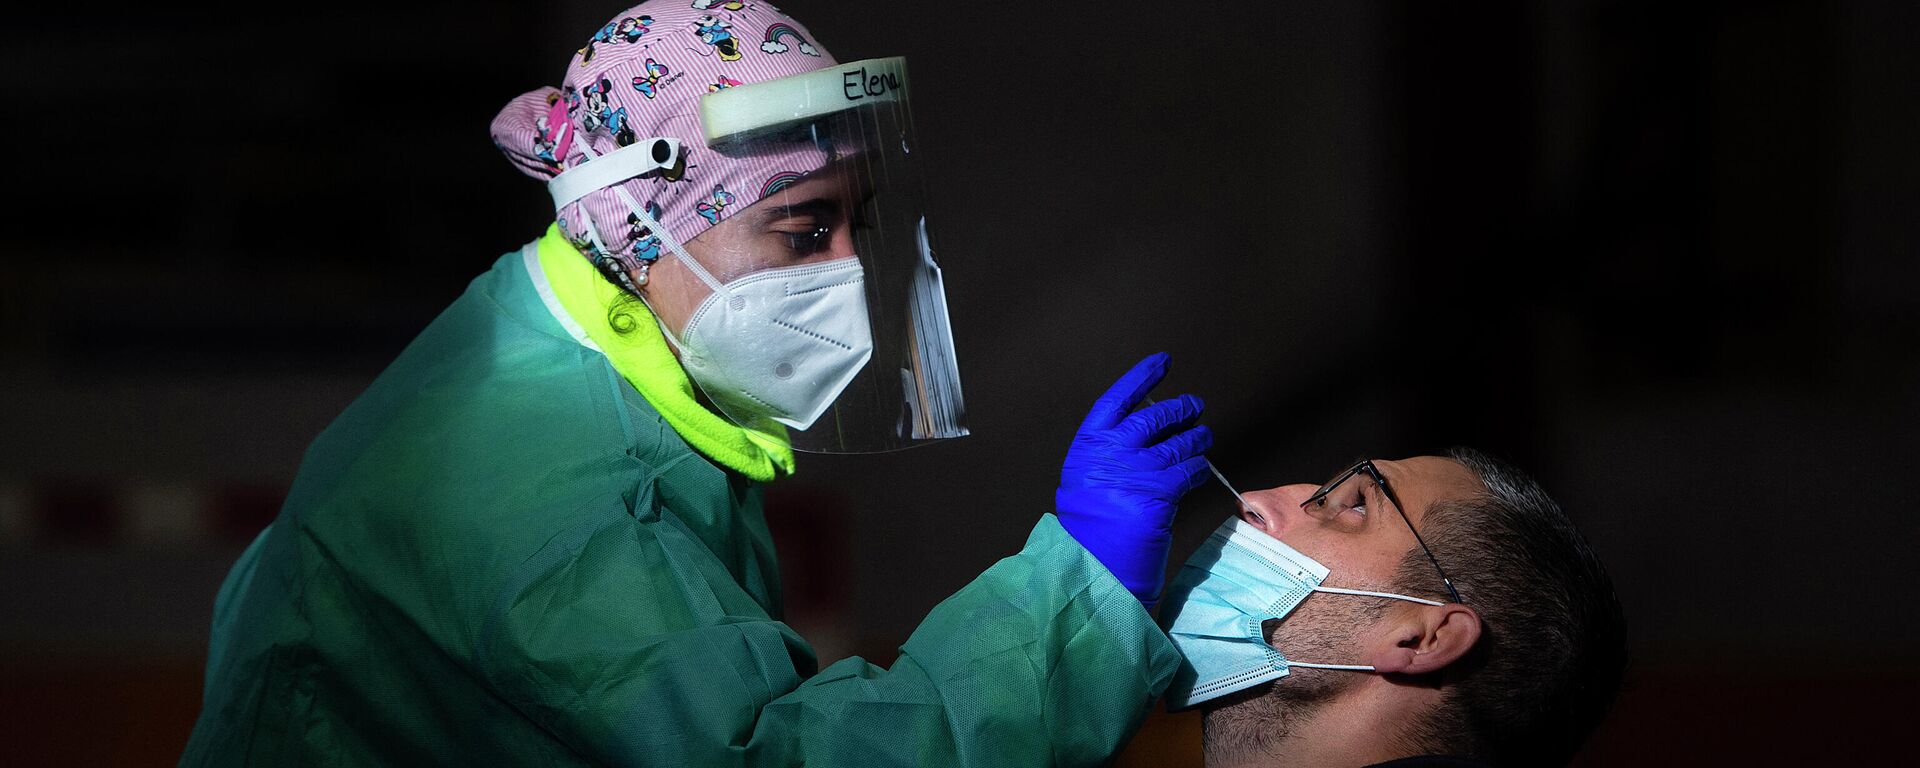 Una trabajadora de la salud realiza una prueba rápida de antígeno para COVID-19 durante una detección masiva de coronavirus en Tui, noroeste de España, el 8 de diciembre de 2020. - Sputnik Mundo, 1920, 10.03.2021